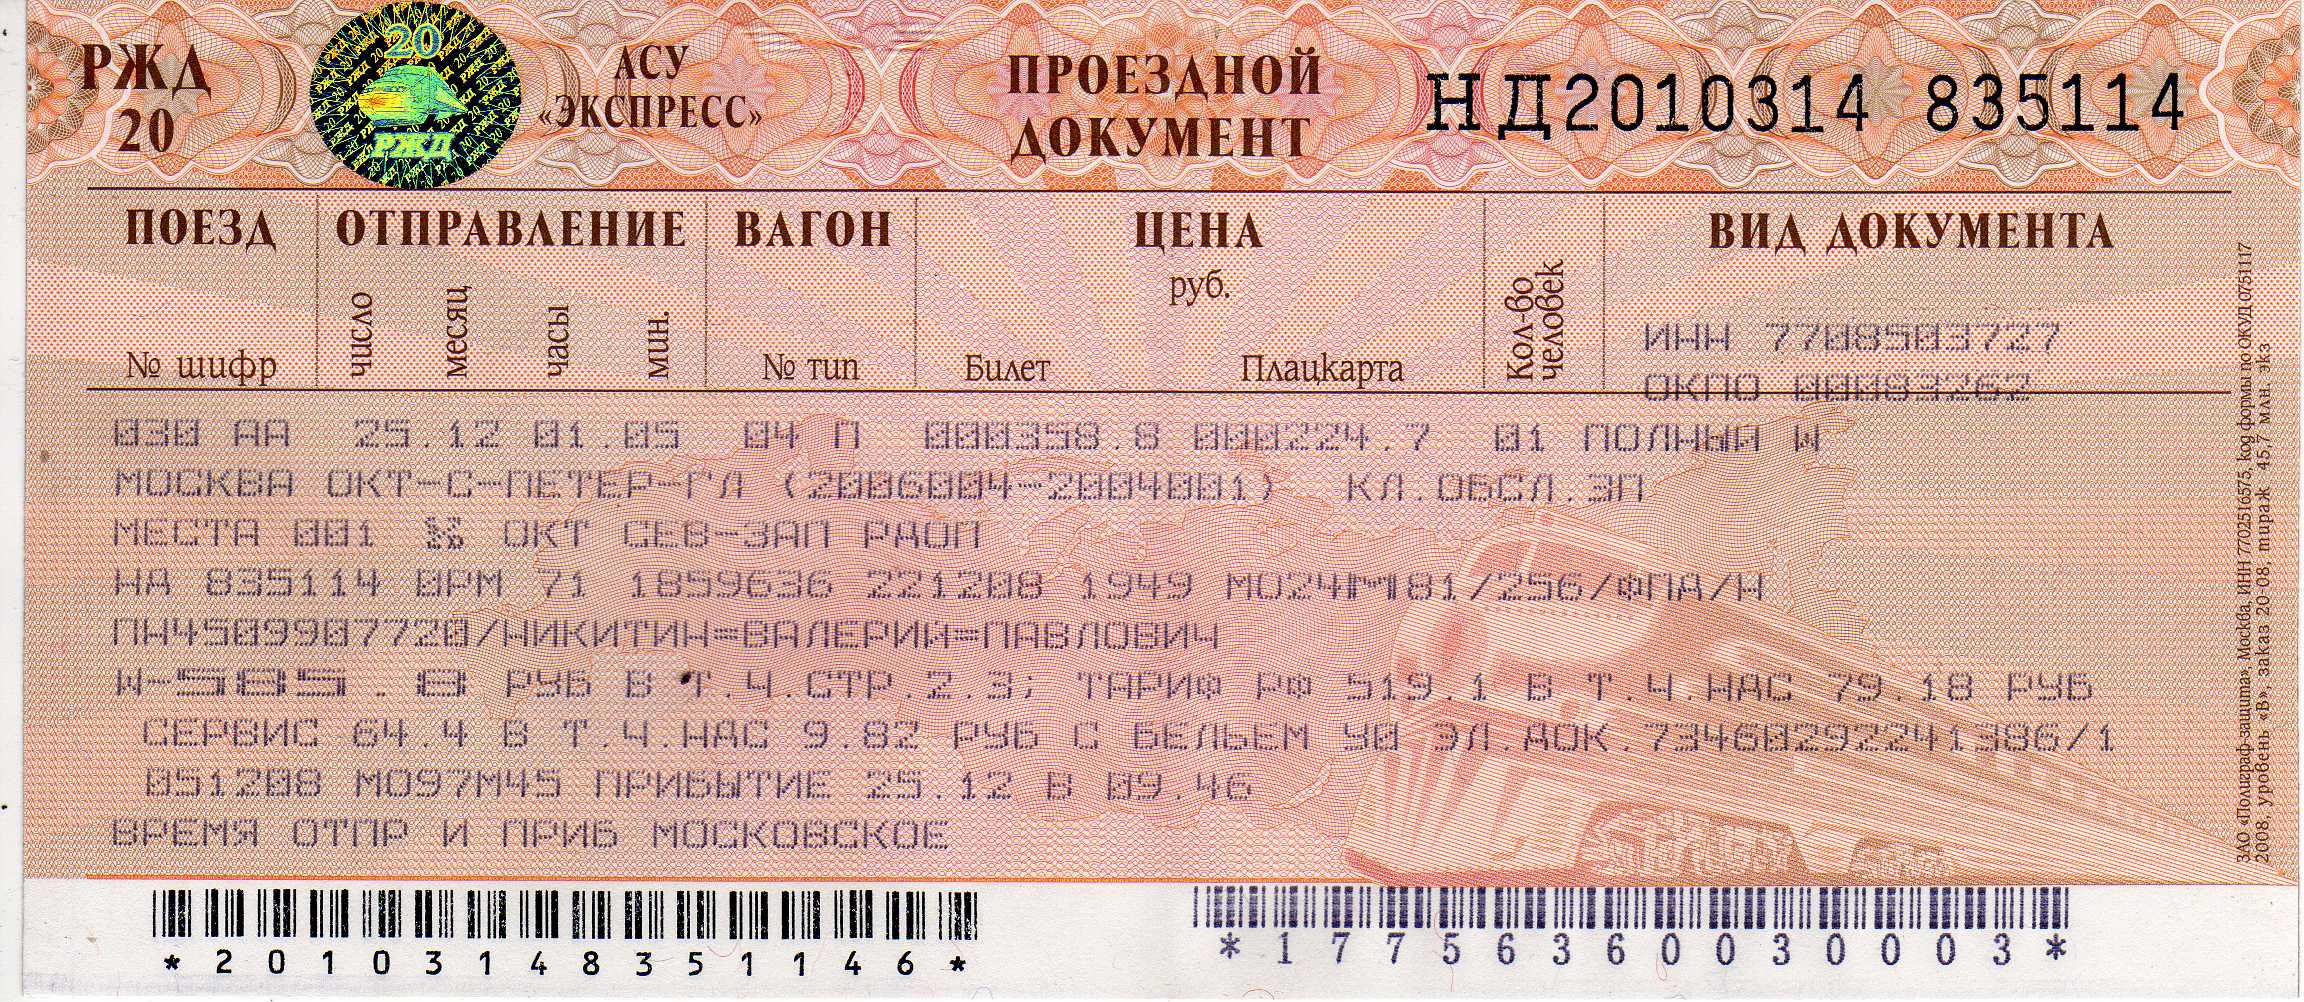 Купить жд билет узбекистан. Ж/Д билеты. Билеты РЖД. Билет на поезд. Проездной документ.